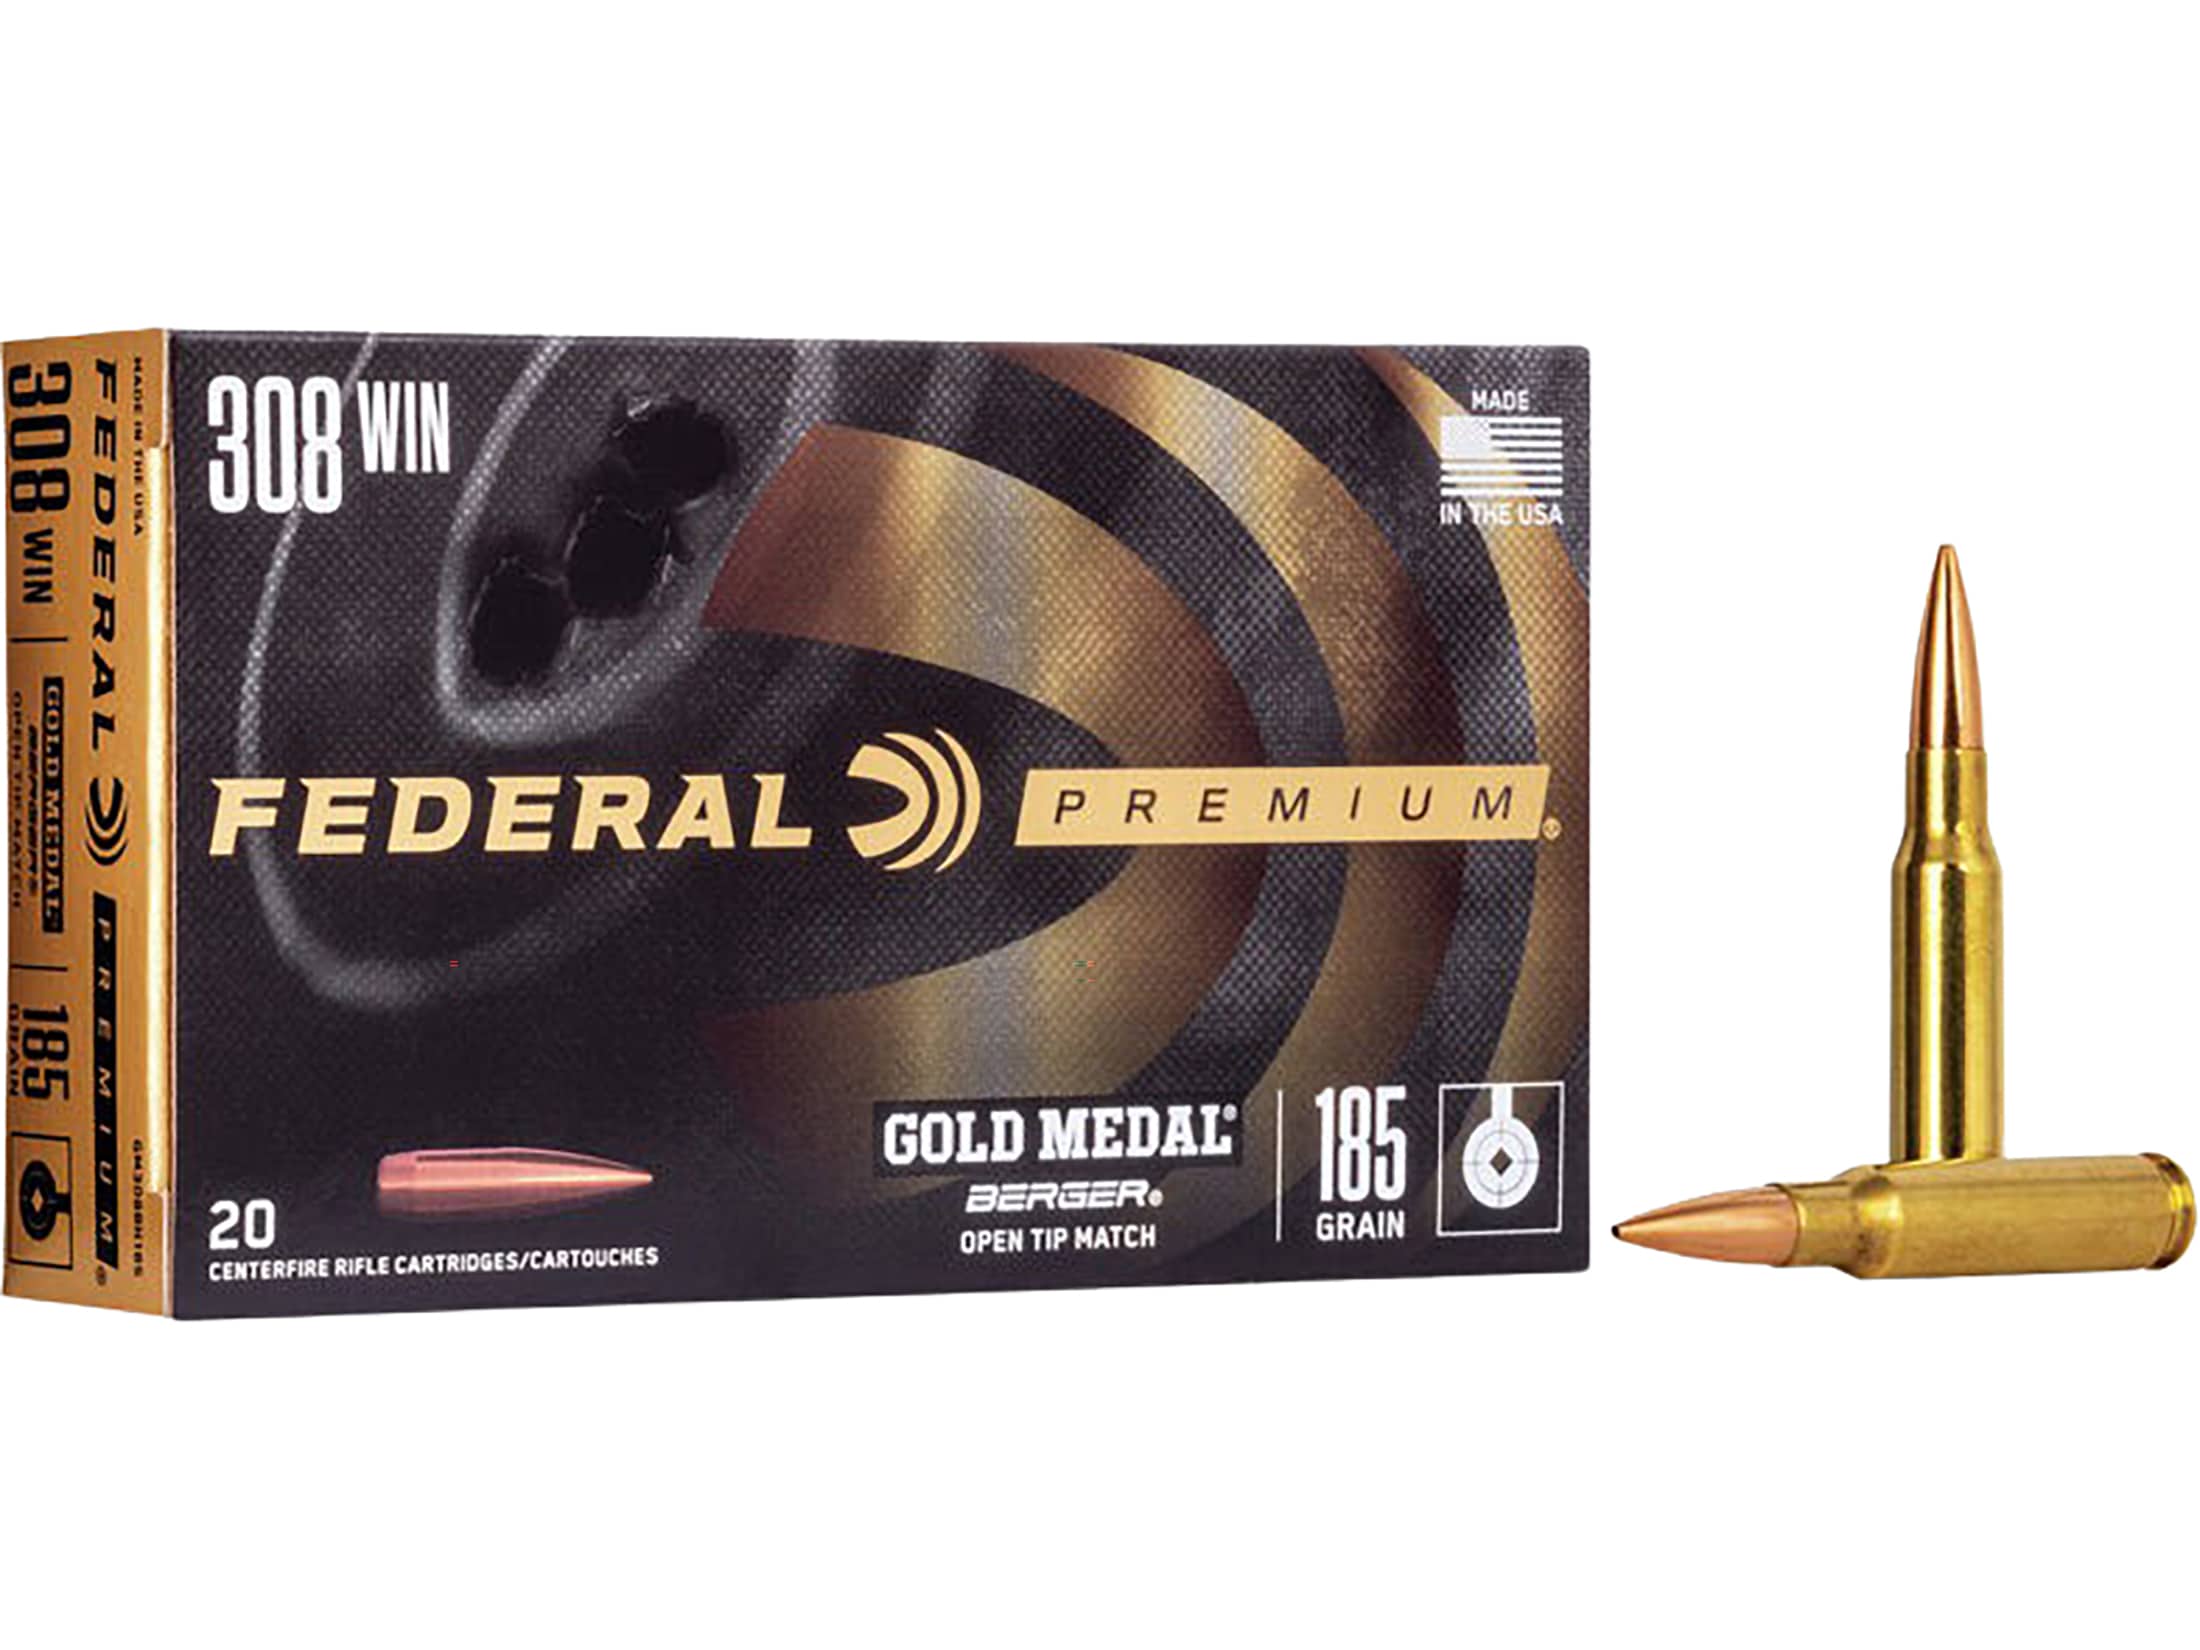 Federal Premium Gold Medal Berger Ammunition 308 Winchester 185 Grain Berger Juggernaut Open Tip Match